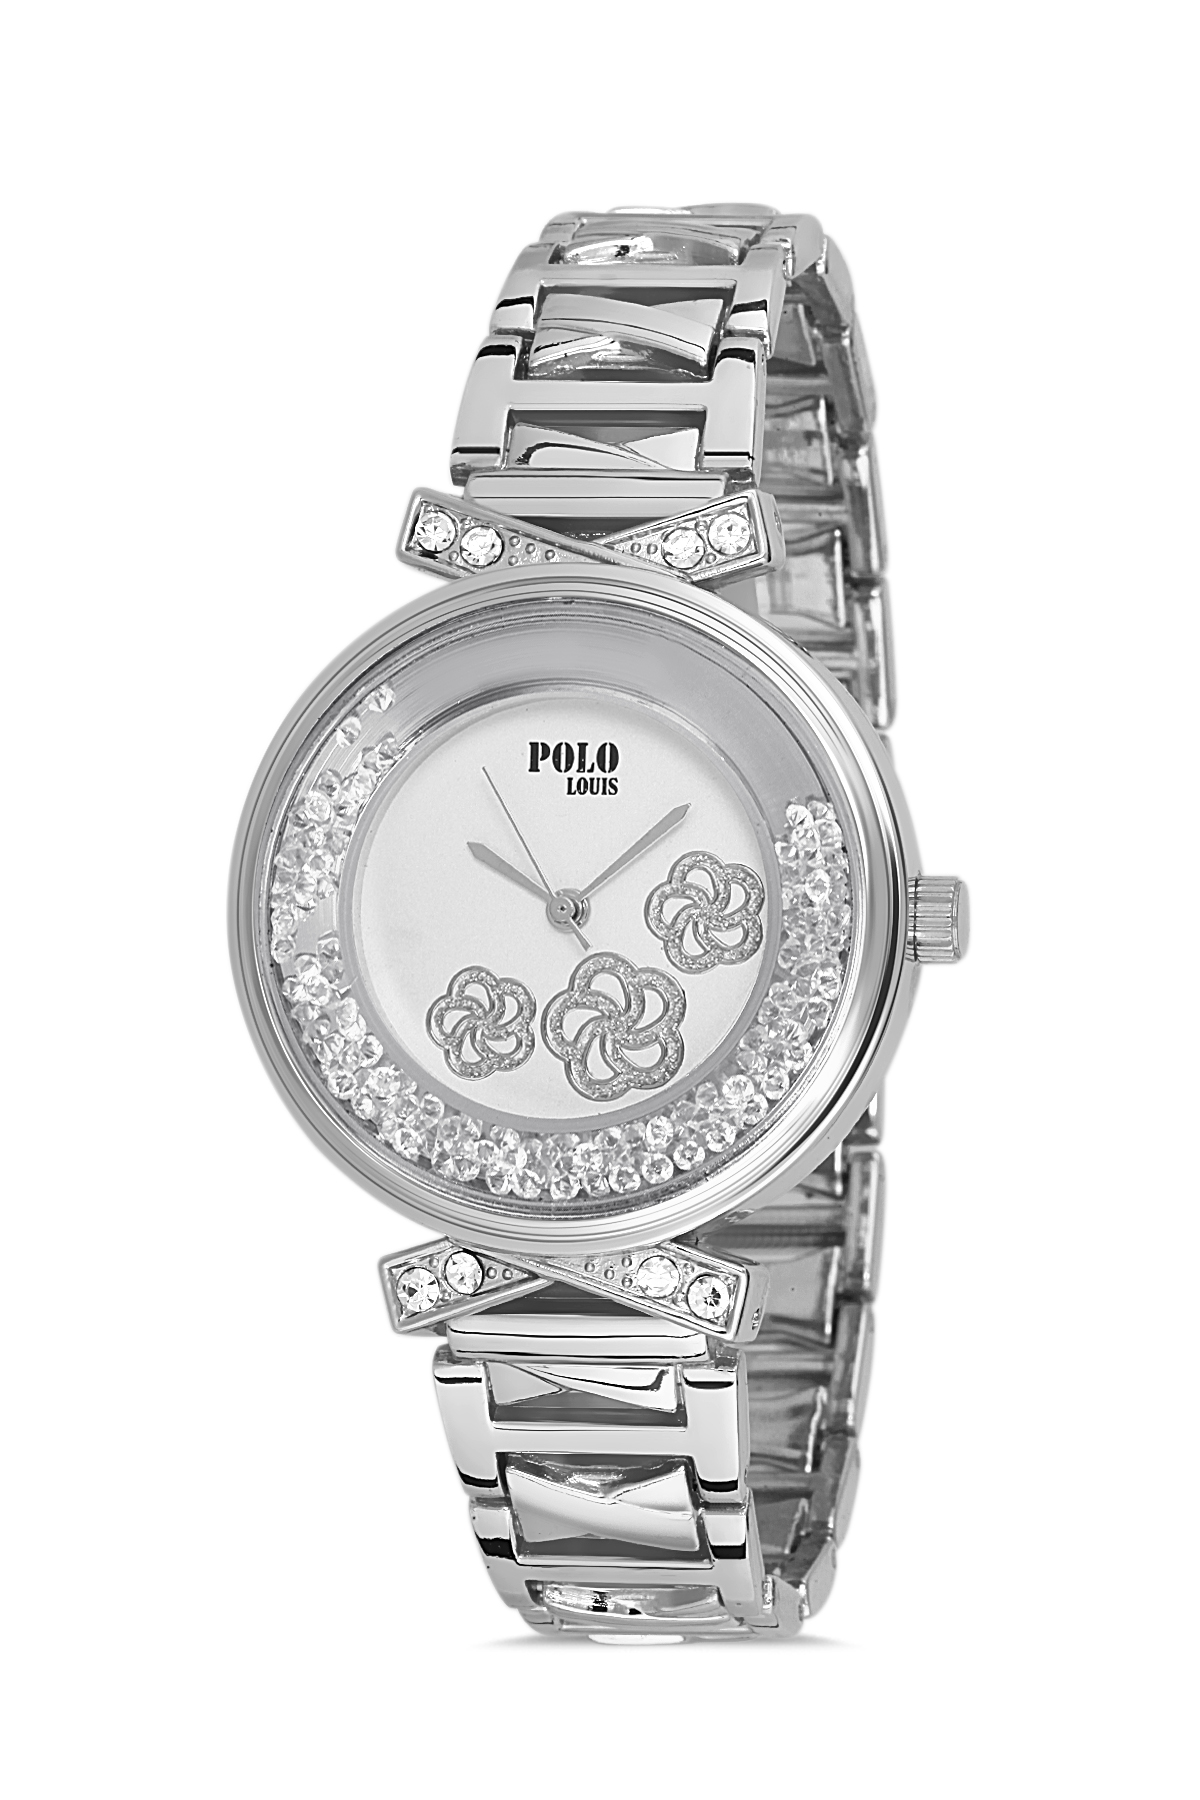 Polo Louıs Spor Şık Çiçek Desenli Hareketli Taş Kadın Kol Saati Gümüş Renk PL-1473B2x